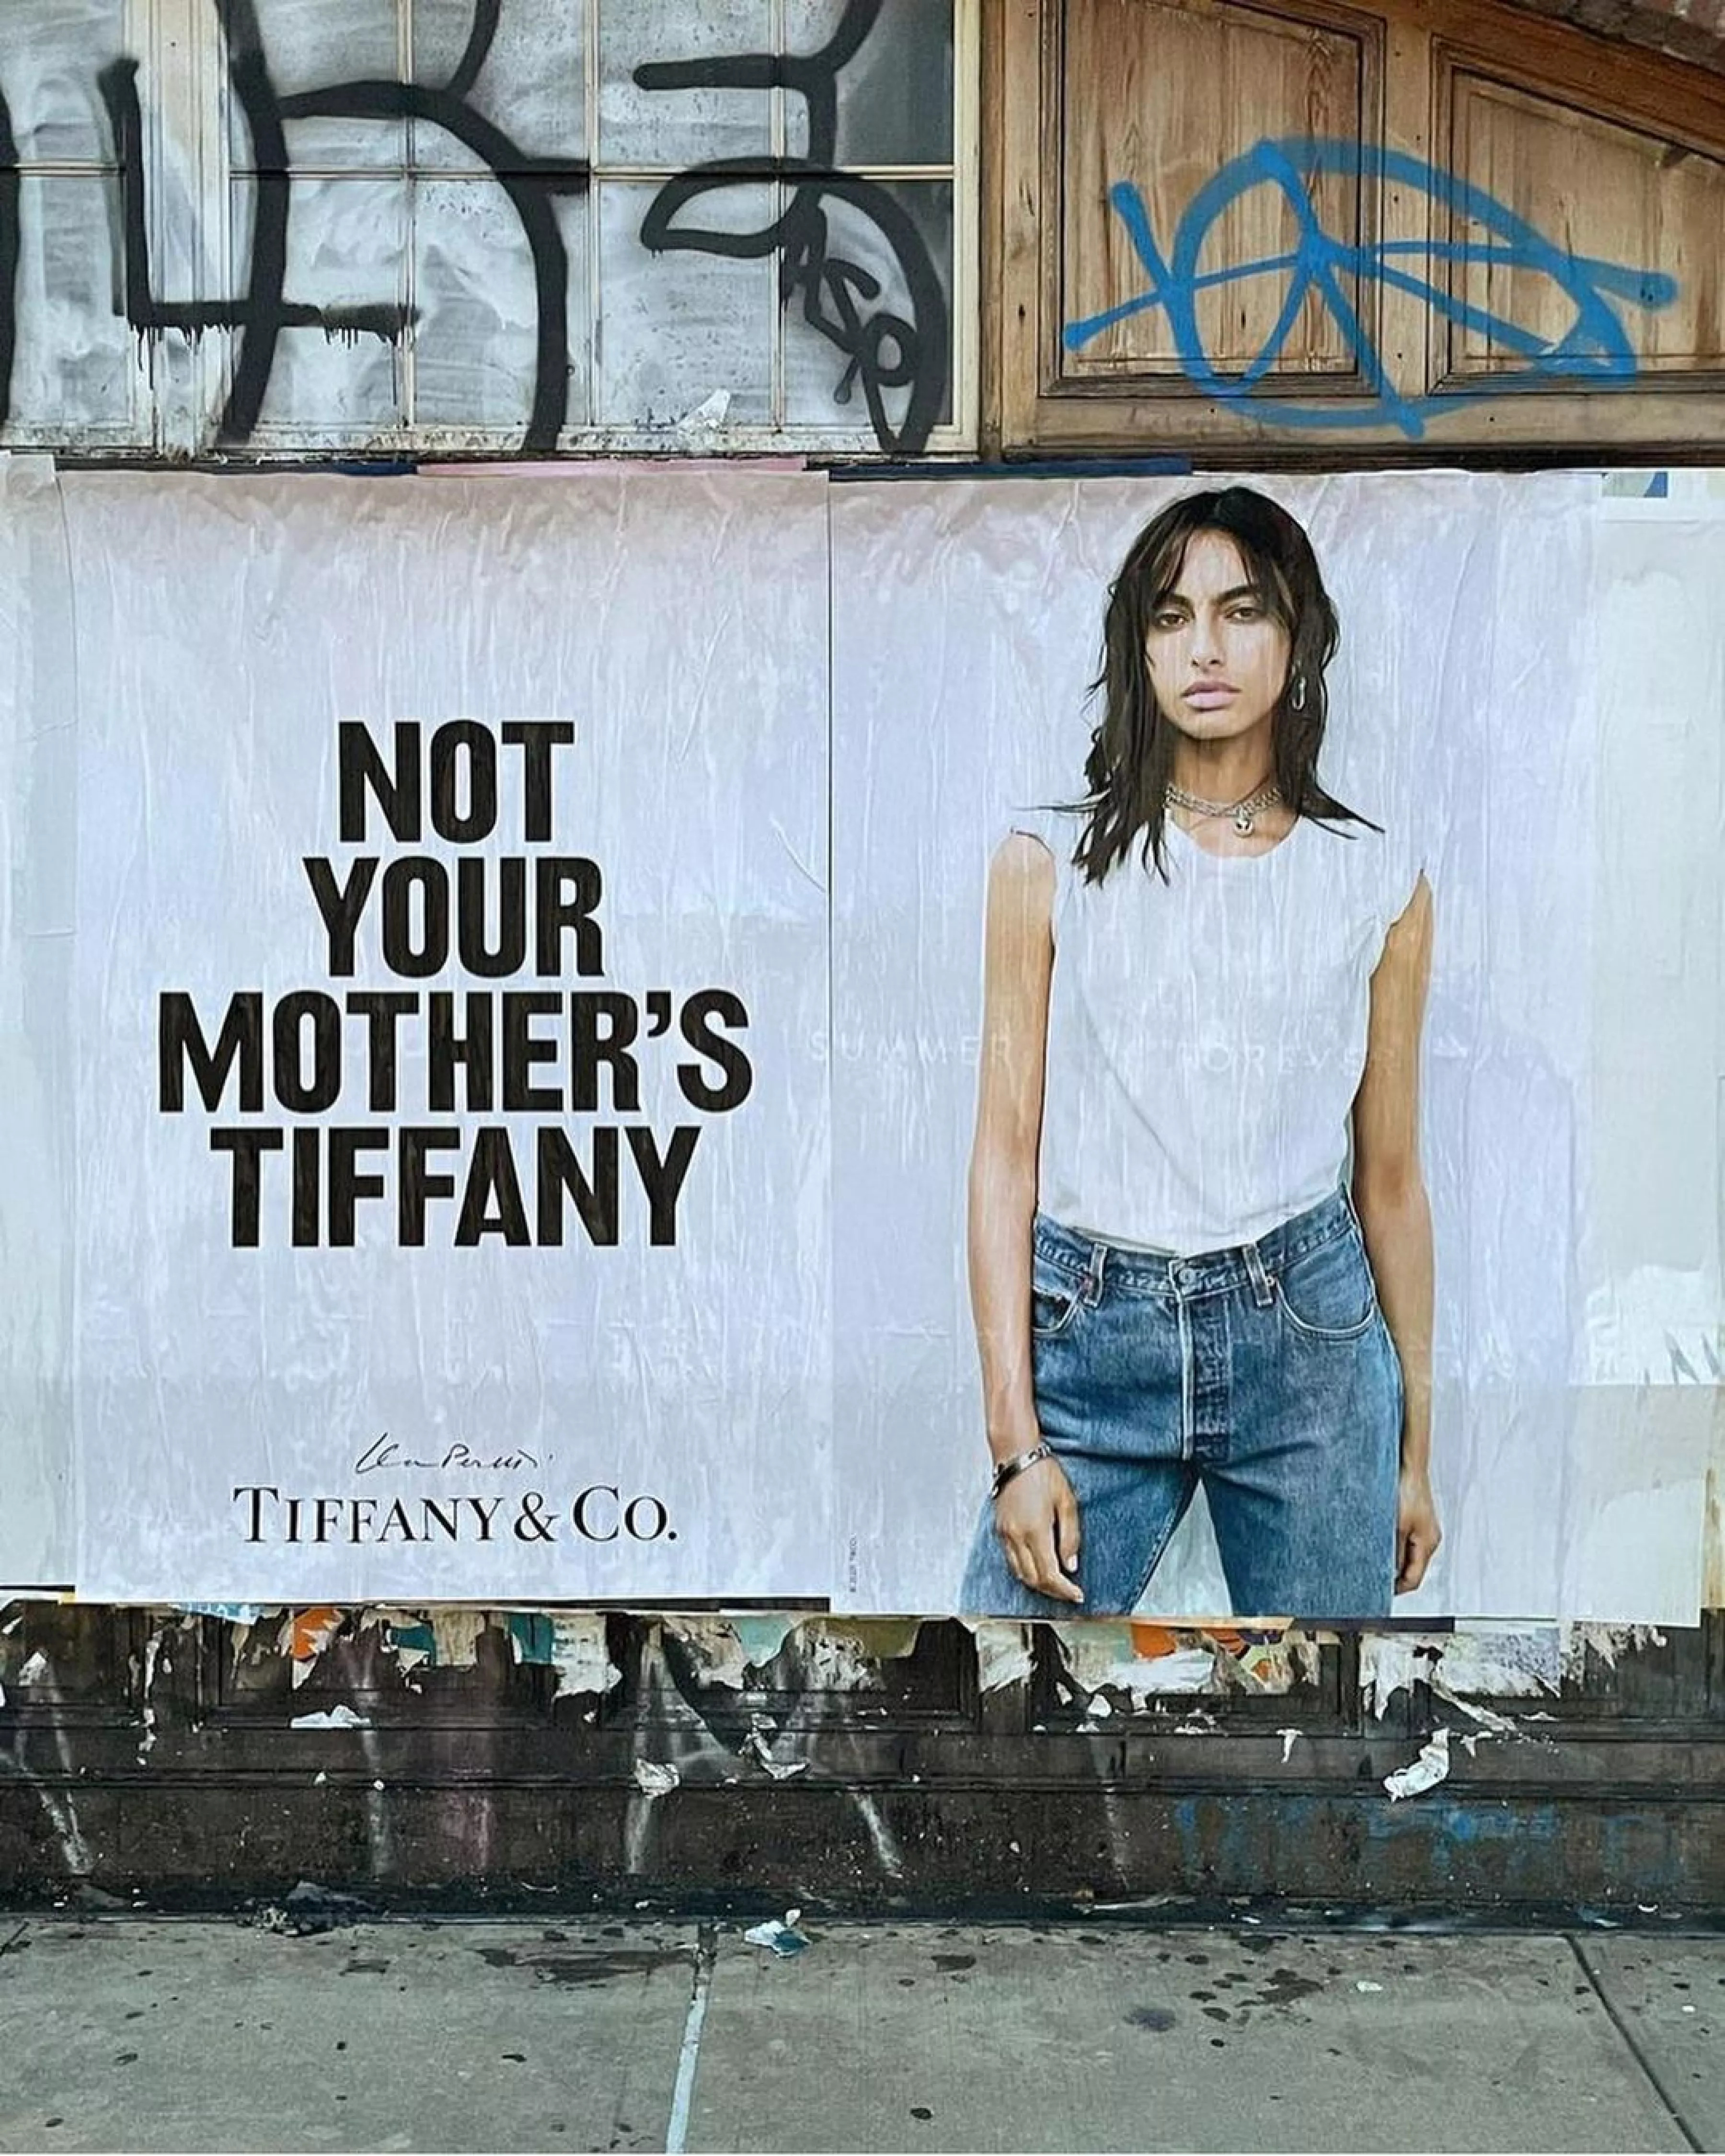 La polémica campaña de Tiffany & Co. para renovarse